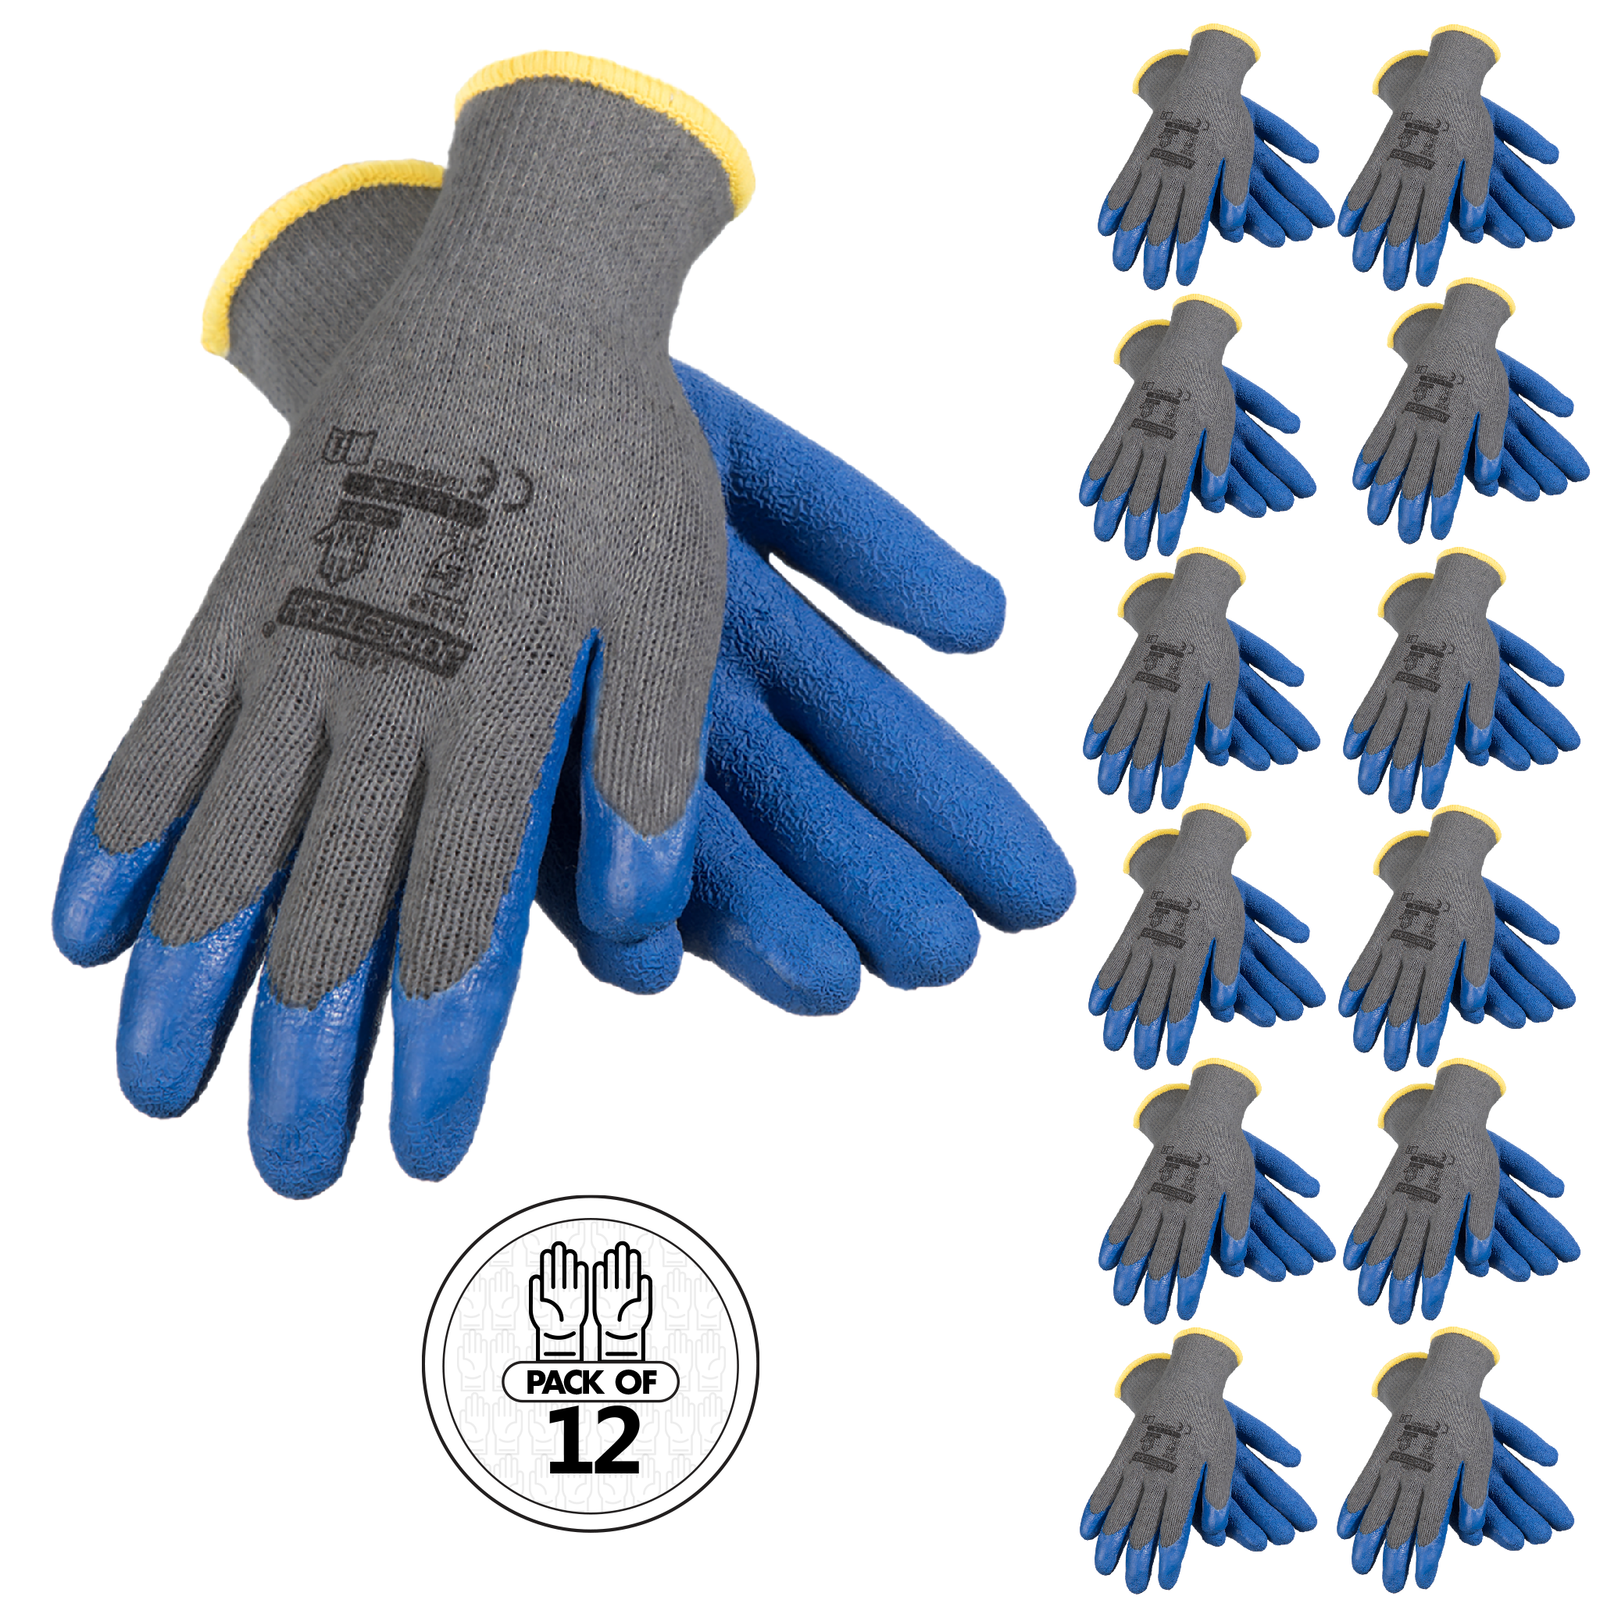 Nugear NBK3416 Safety Work Gloves-12 Pairs, Brazil